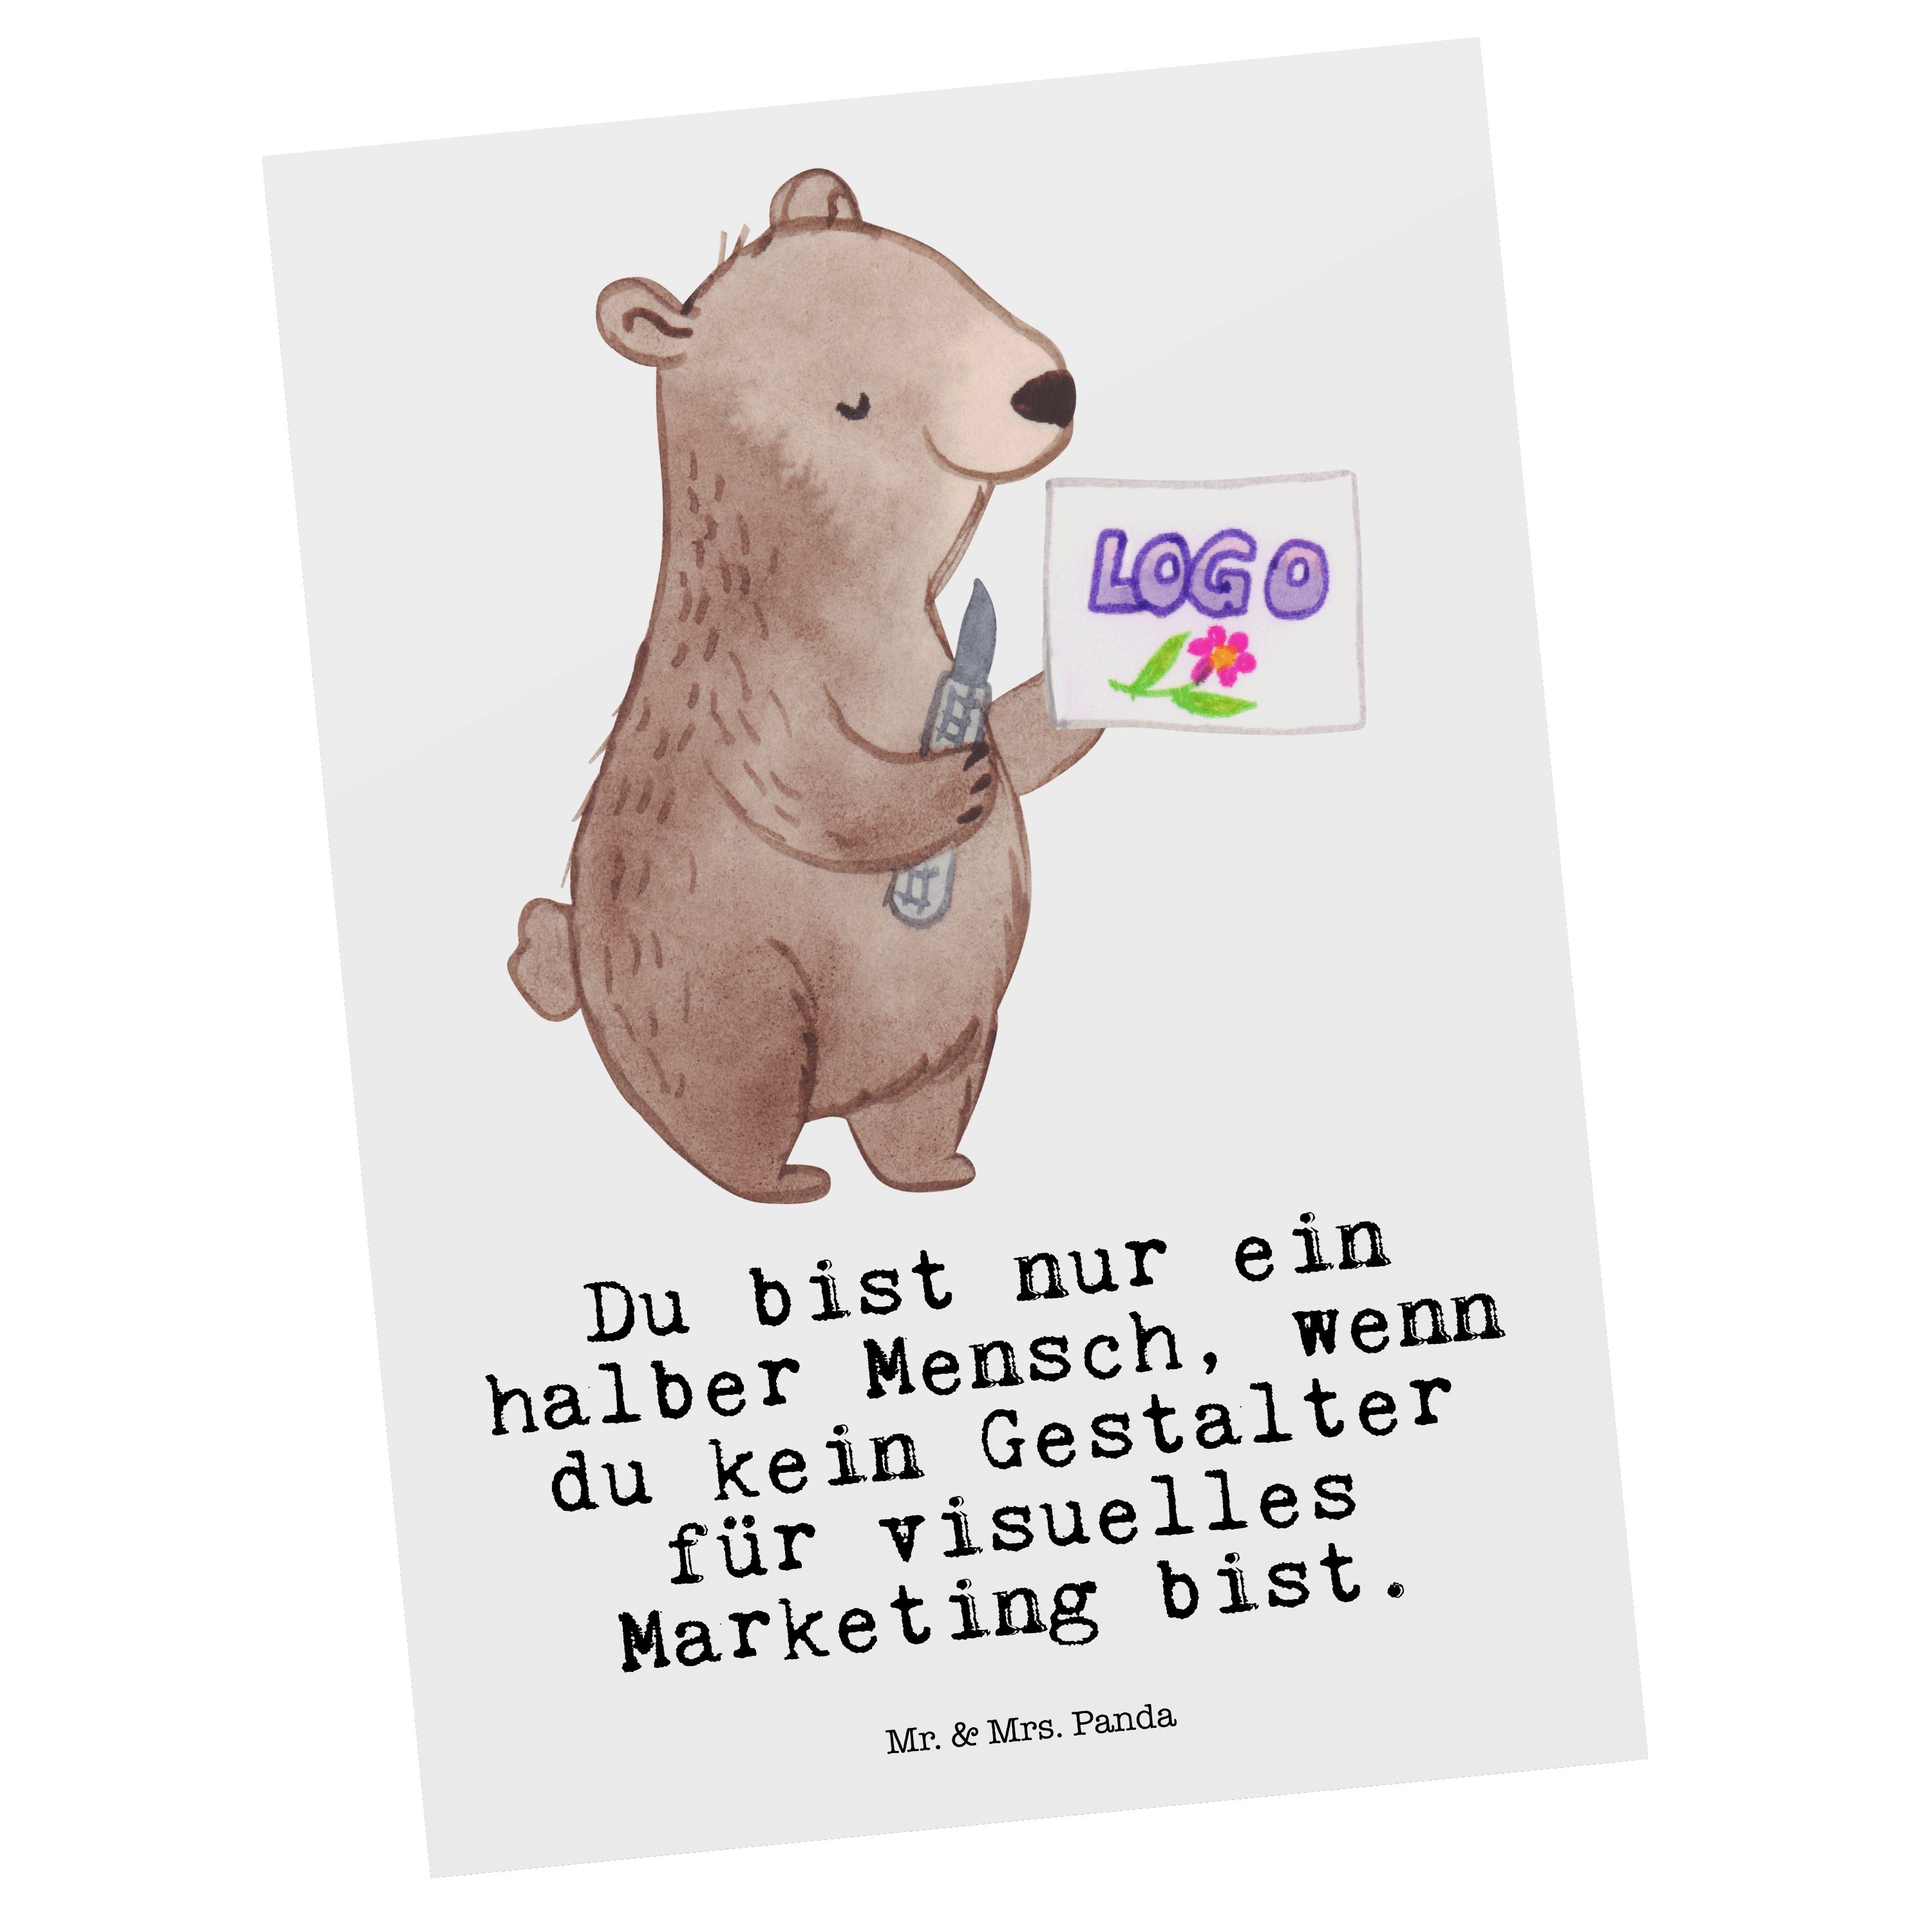 Mrs. - Marketing Weiß visuelles mit Mr. - Postkarte Herz für Grußkar Panda Geschenk, & Gestalter